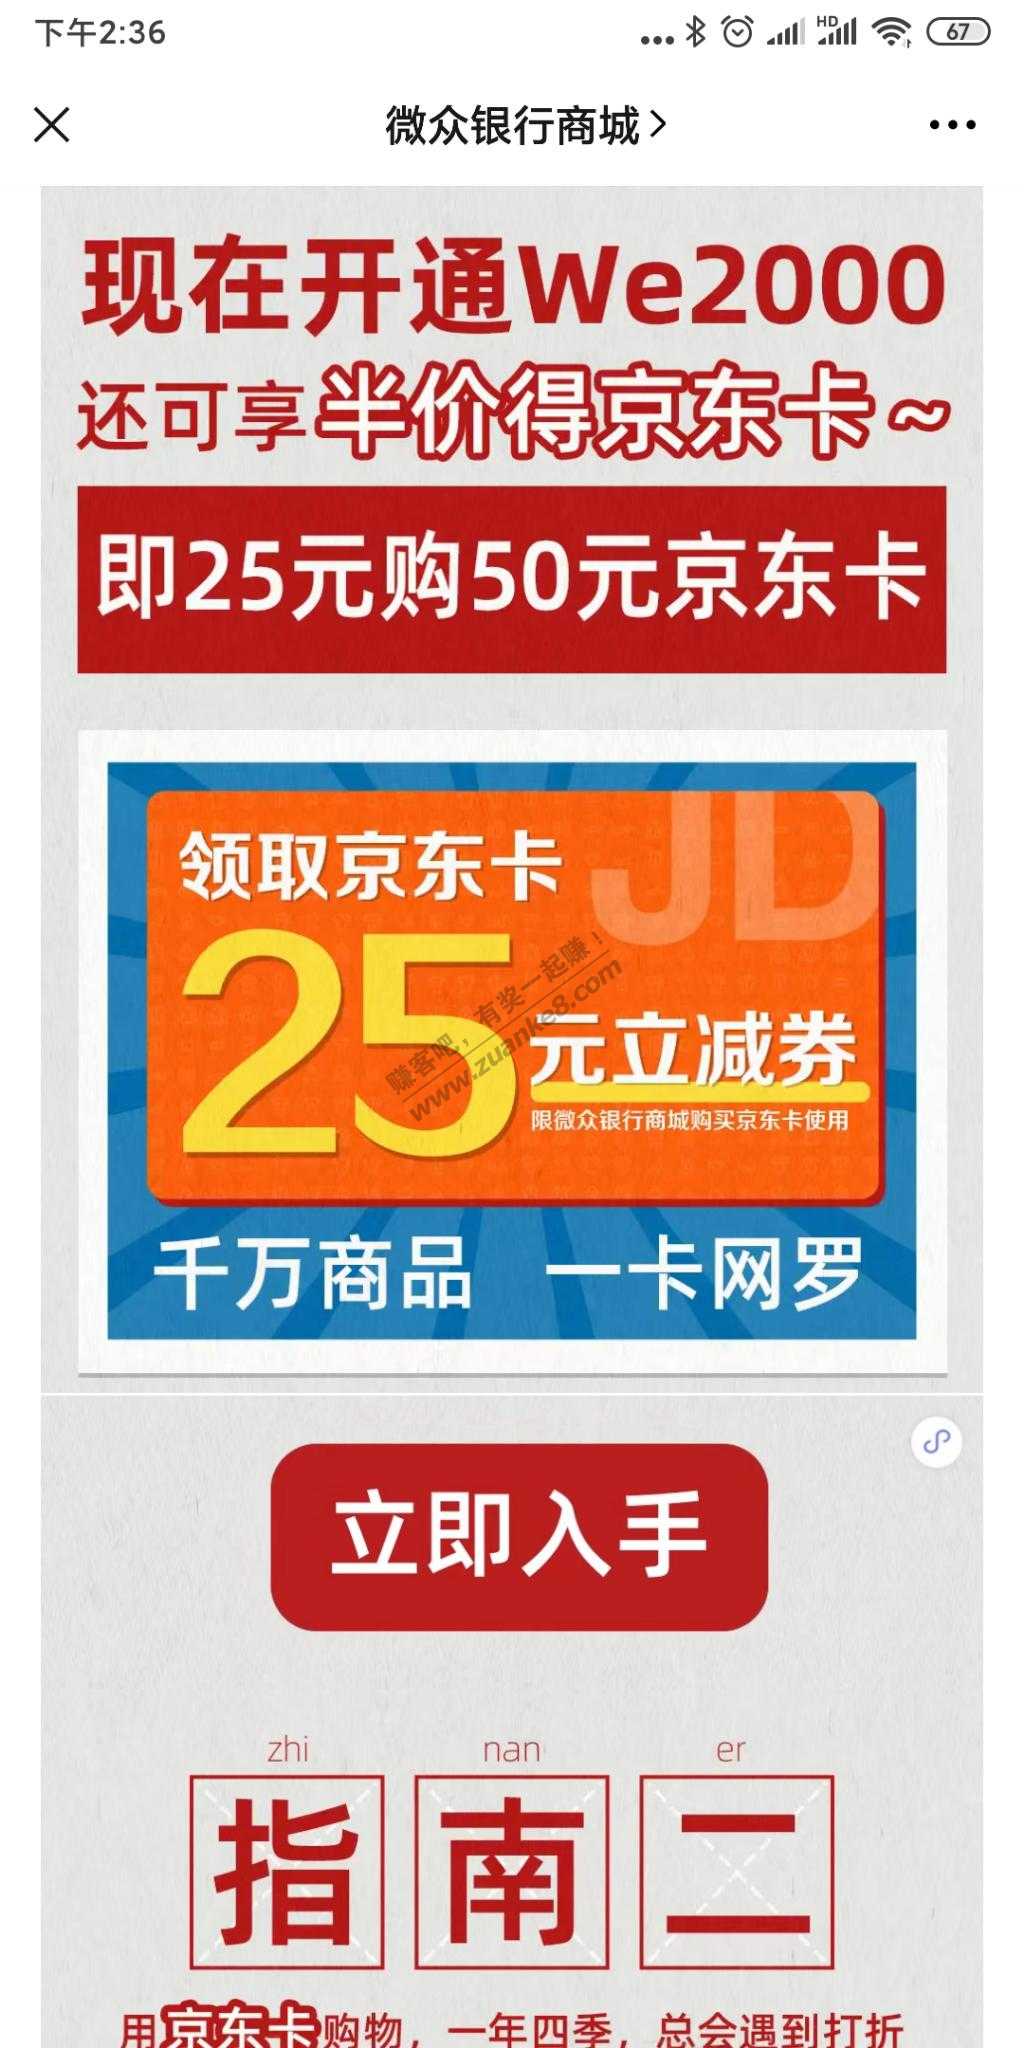 开通微众银行25买50京东卡-惠小助(52huixz.com)